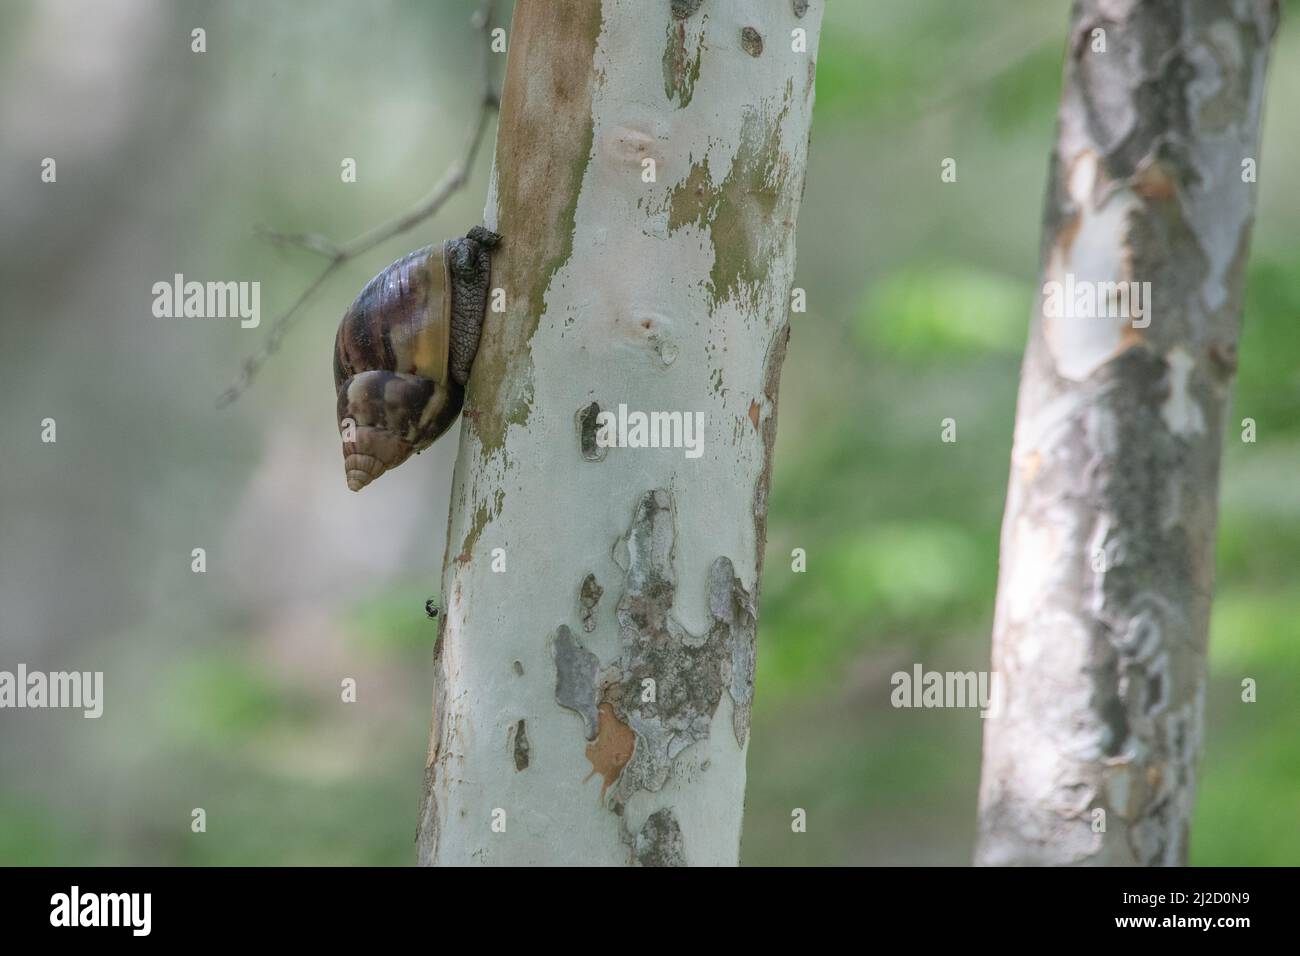 Una lumaca africana gigante (Lissachatina fulica) dalla foresta asciutta dell'Ecuador, una specie invasiva diffusa in molte aree. Foto Stock